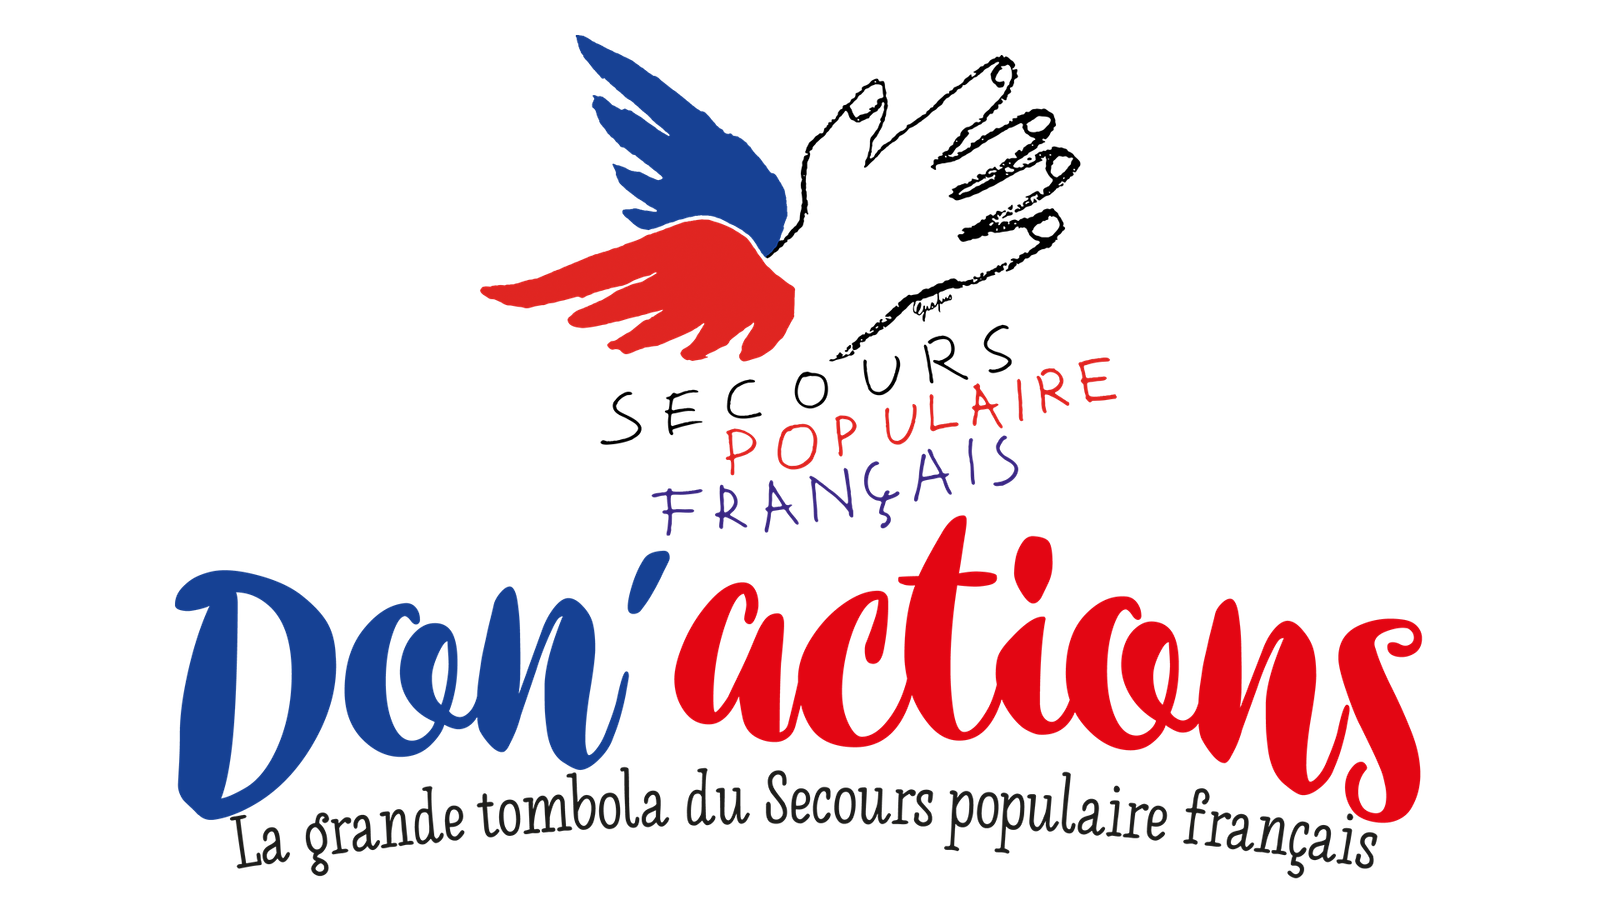 Lamai Institute Partners with Secours Populaire Francais